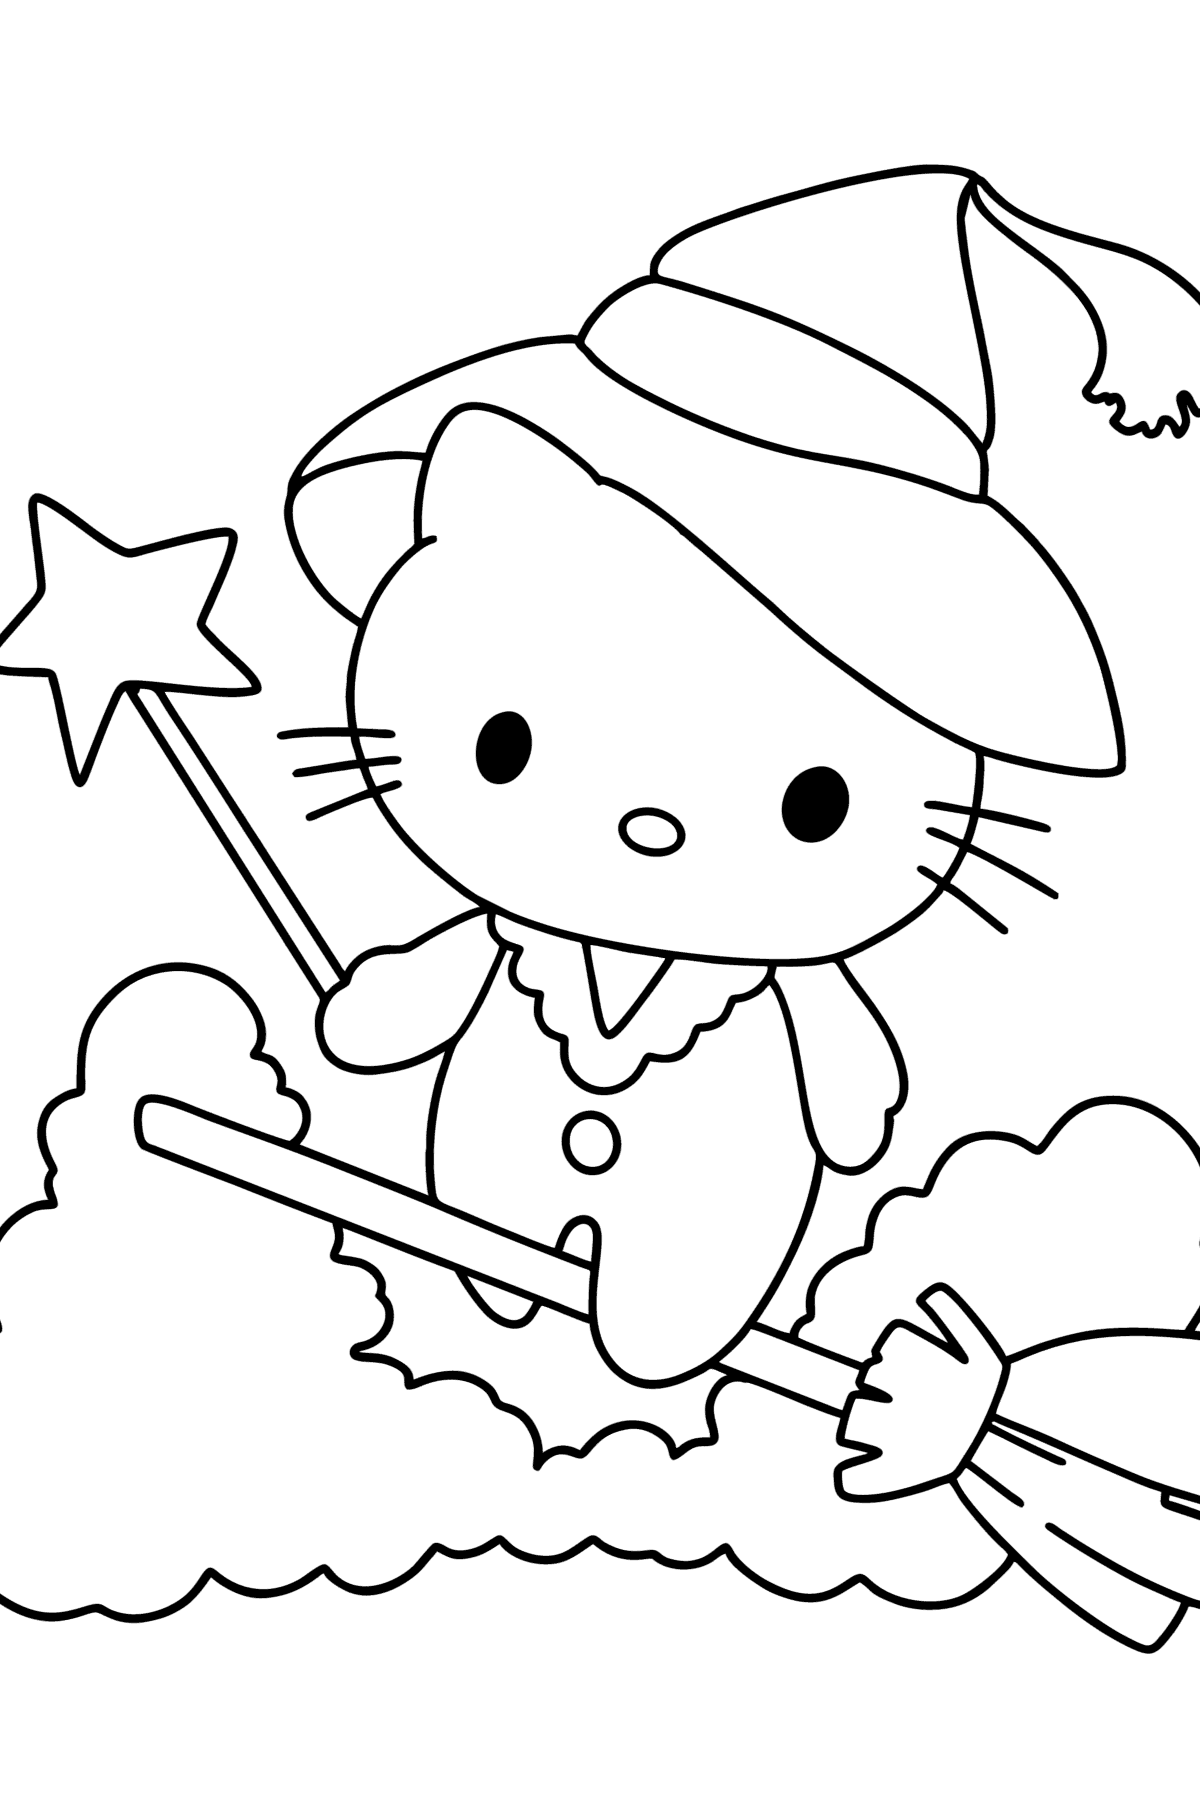 Boyama sayfası Hello Kitty cadılar bayramı - Boyamalar çocuklar için